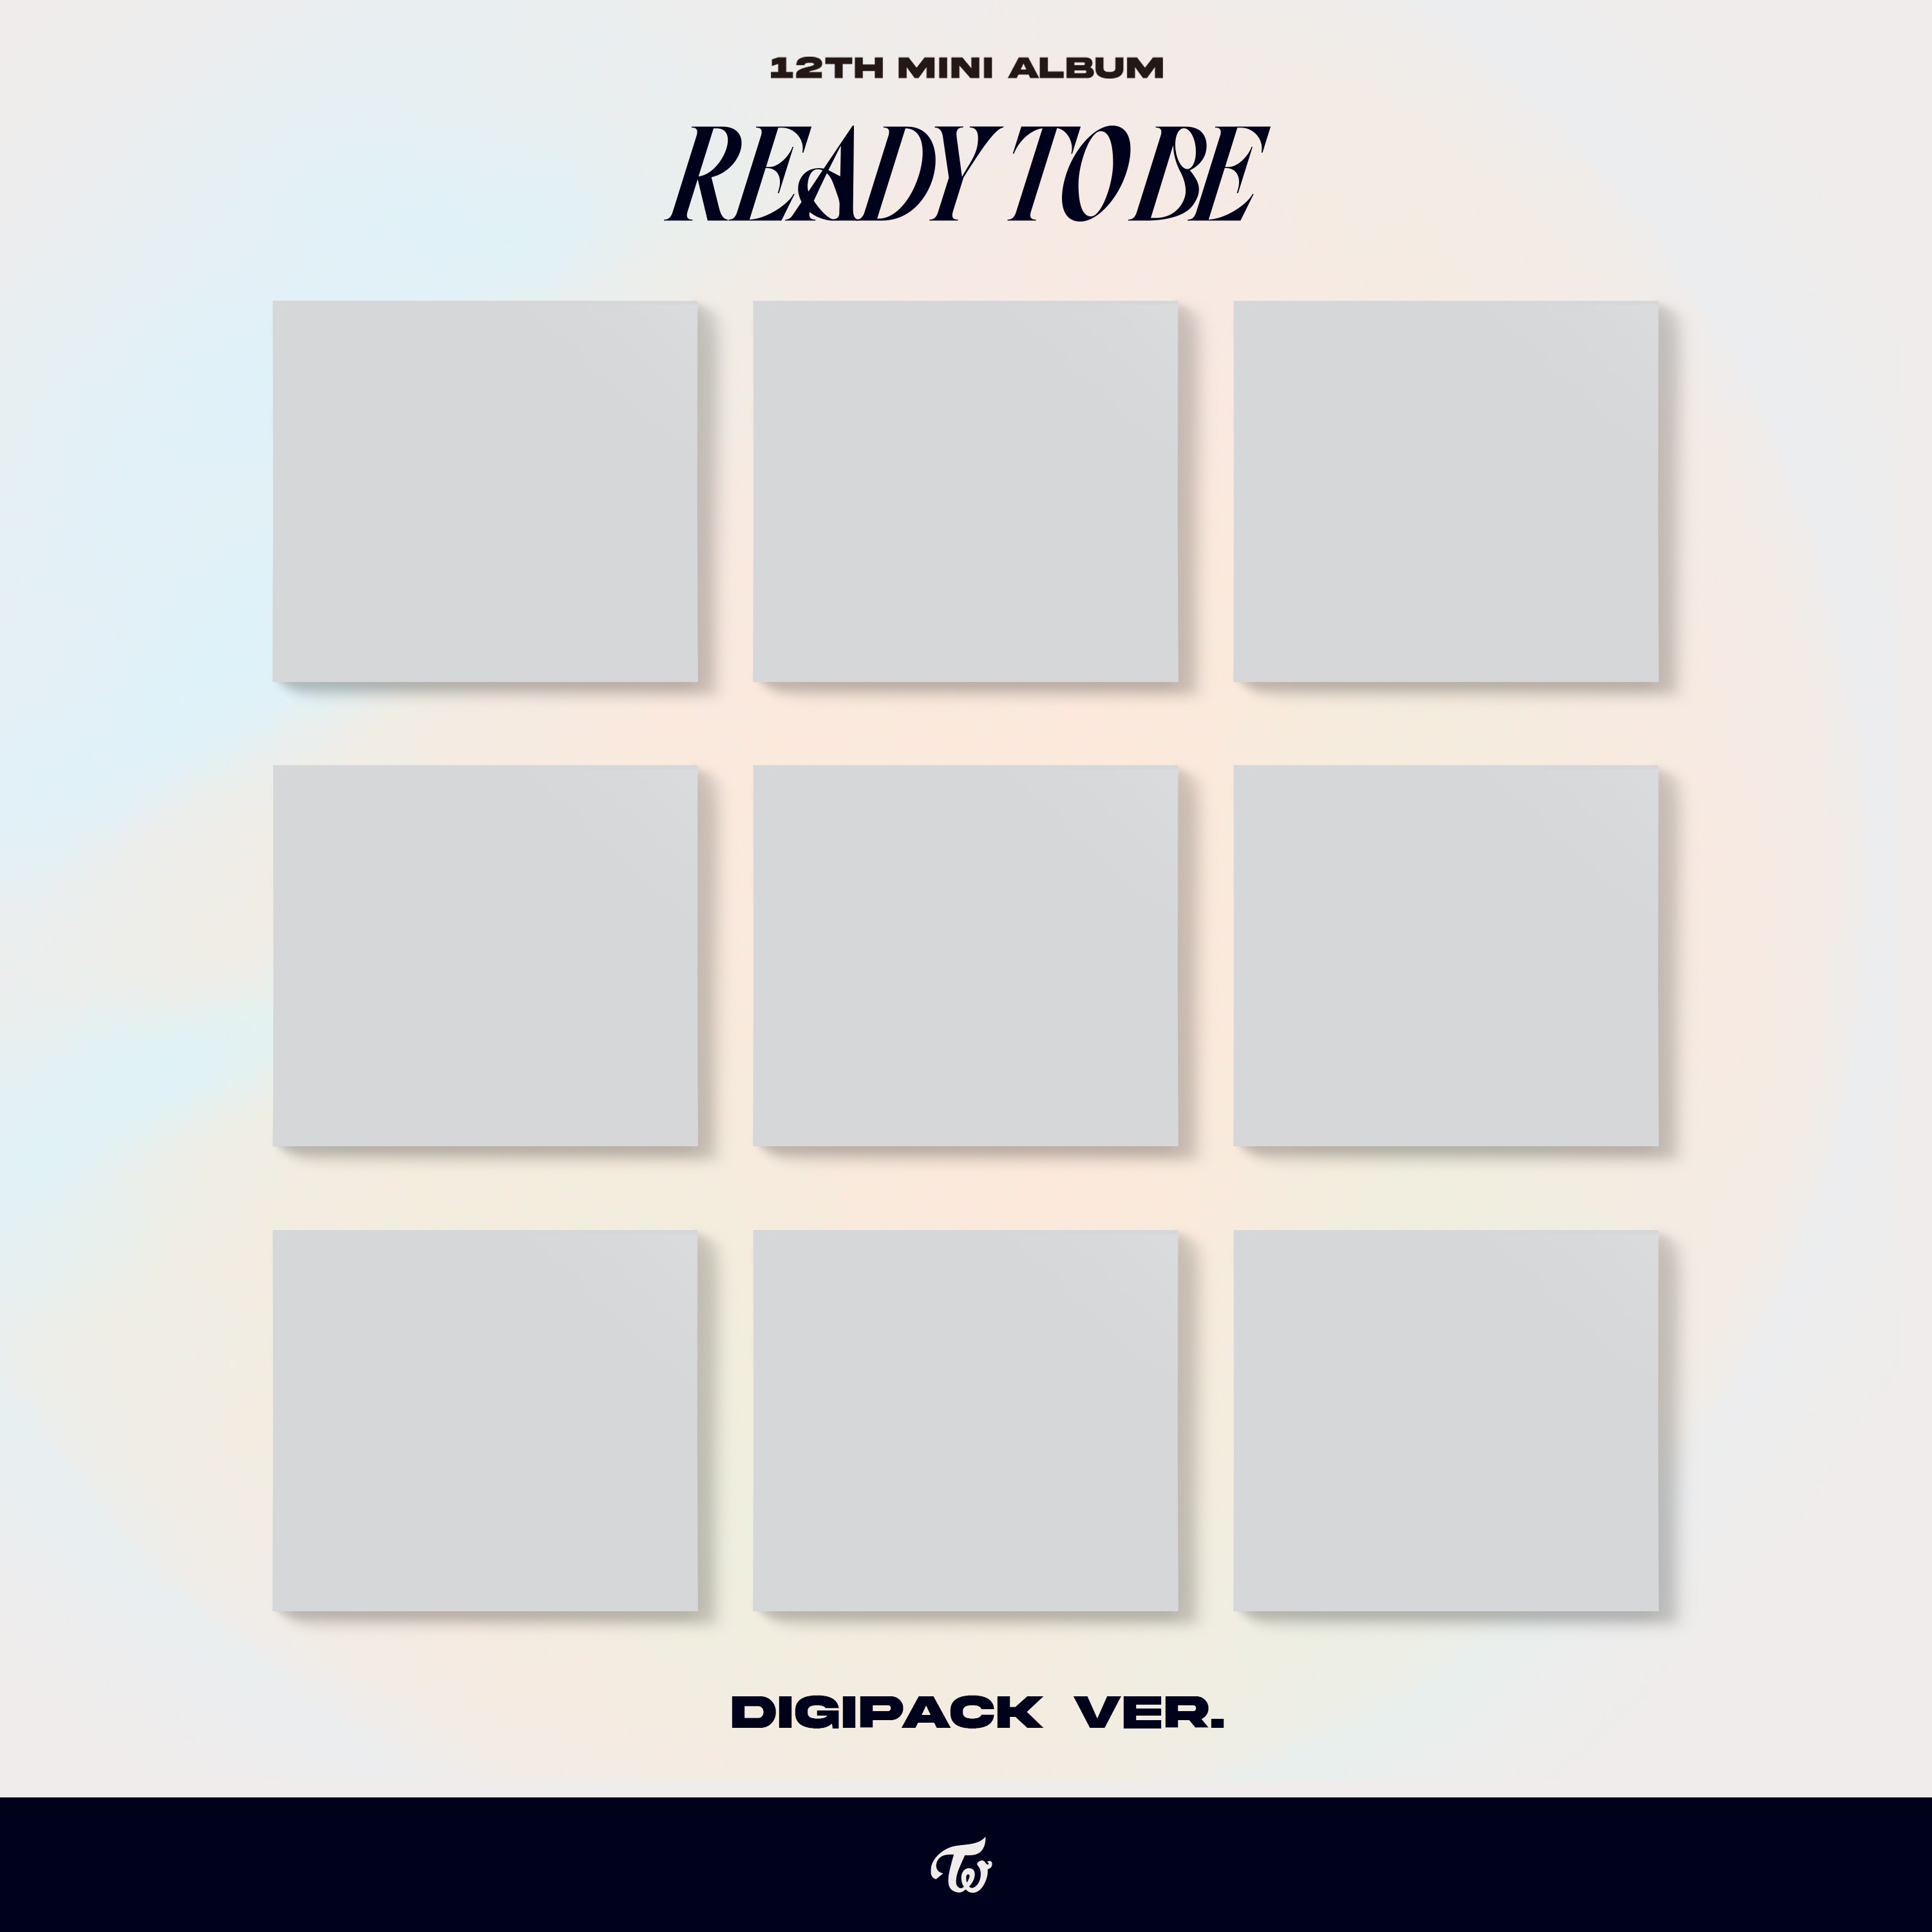 [拆卡专] TWICE - 迷你专辑 12辑 [READY TO BE] (Digipack Ver.) (随机版本)_俞定延吧官博